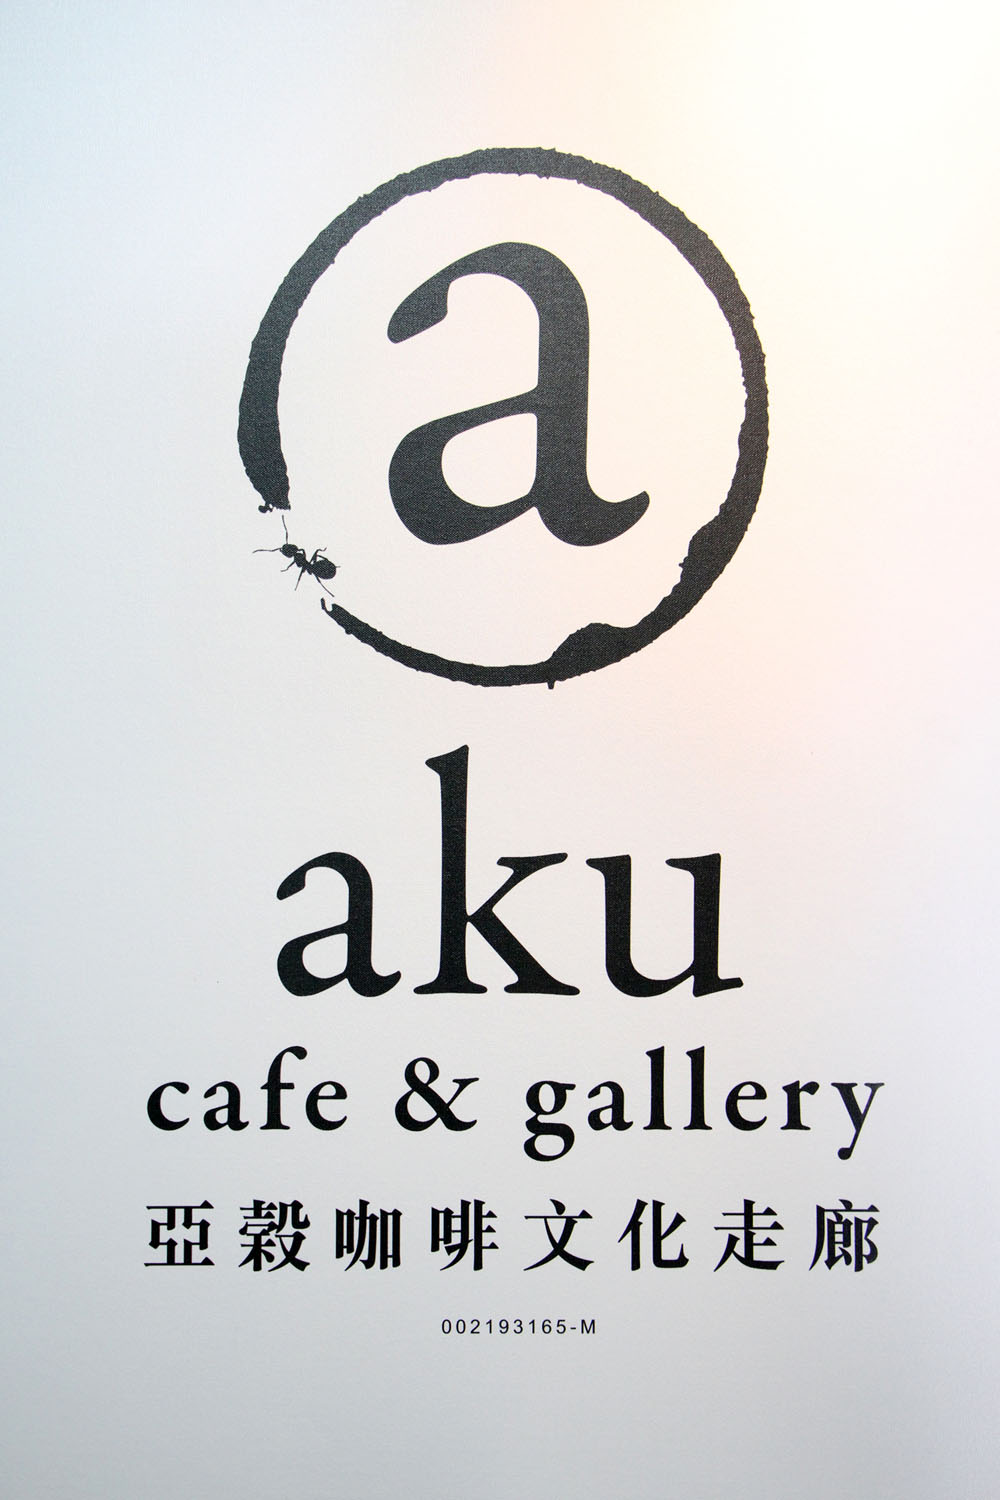 Aku Cafe & Gallery